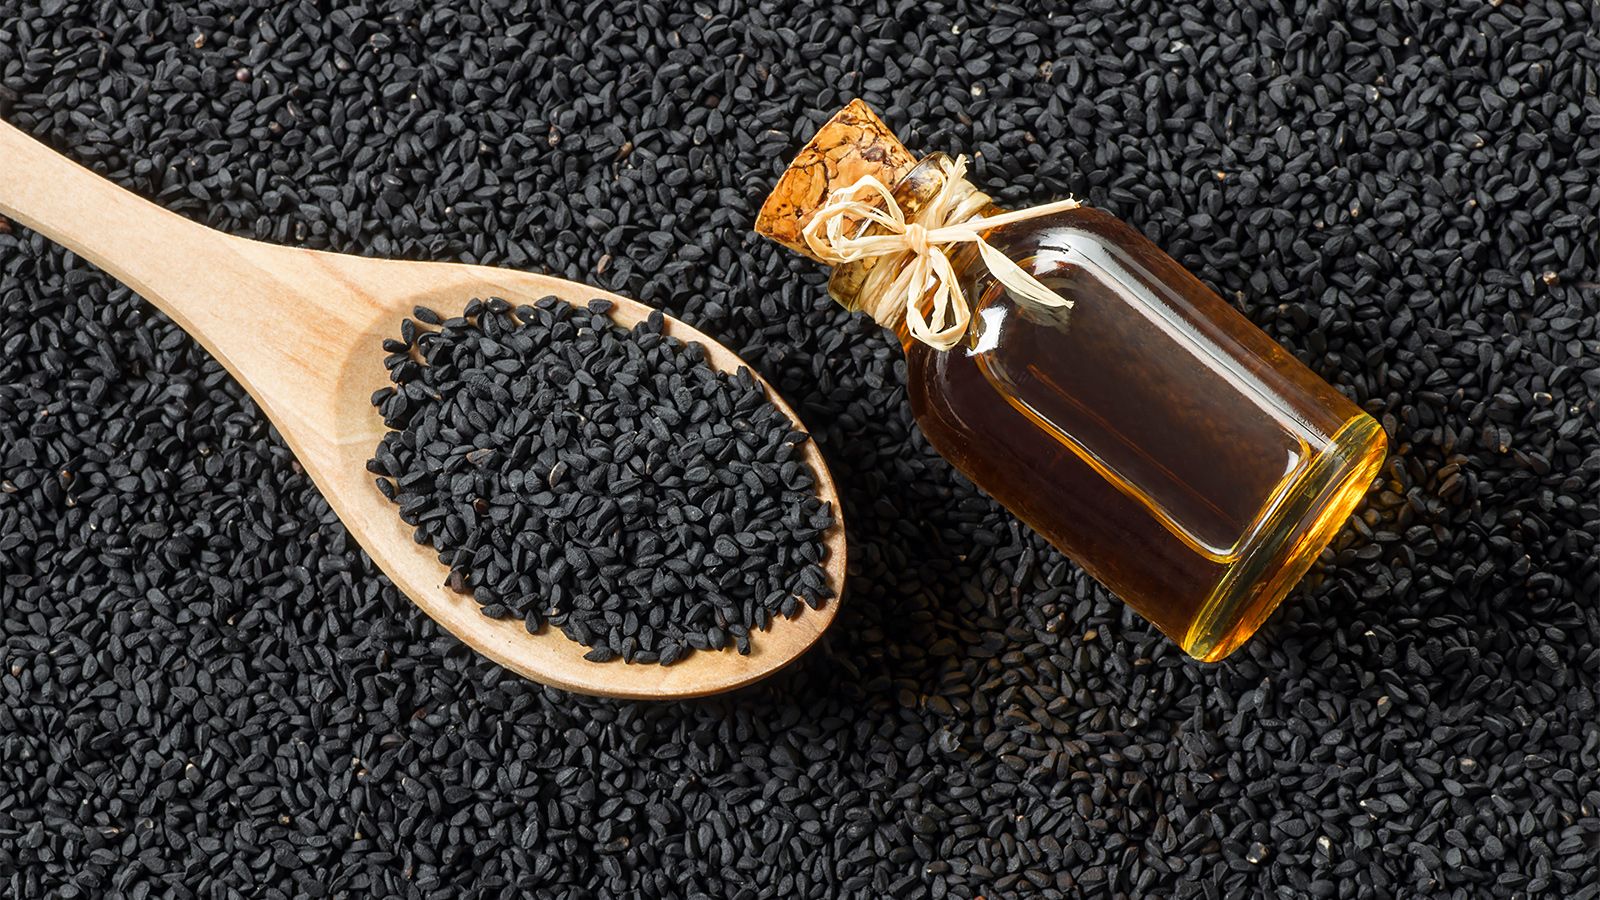 Масло черного тмина, также известное как масло чернушки, получают из семян растения калинджи. Это масло уже давно используется в традиционной медицине и косметологии благодаря своим полезным свойствам.